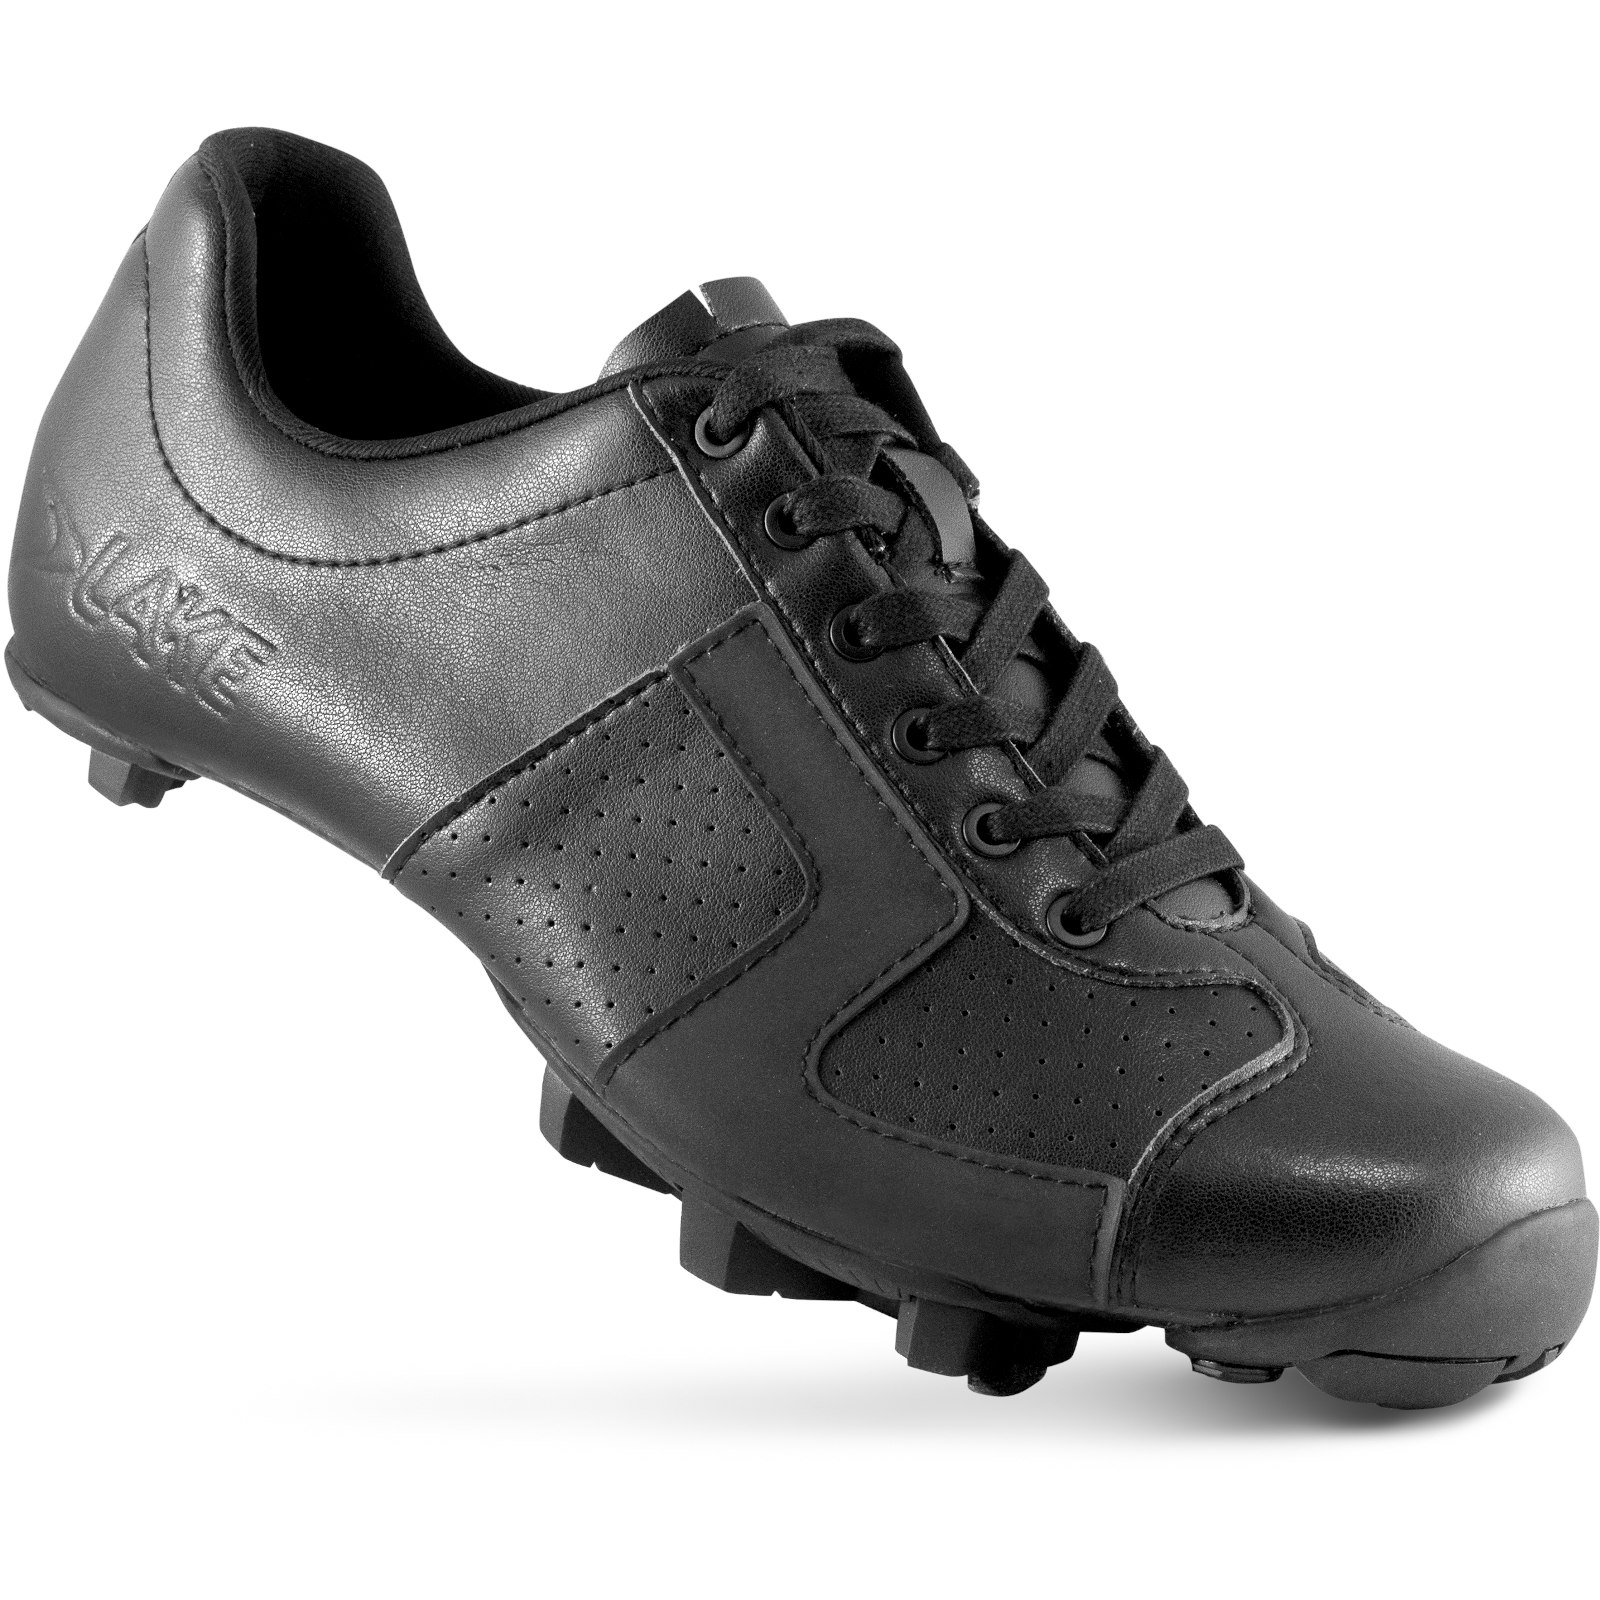 Produktbild von Lake MX 1C-X Wide MTB Schuhe - schwarz clarino